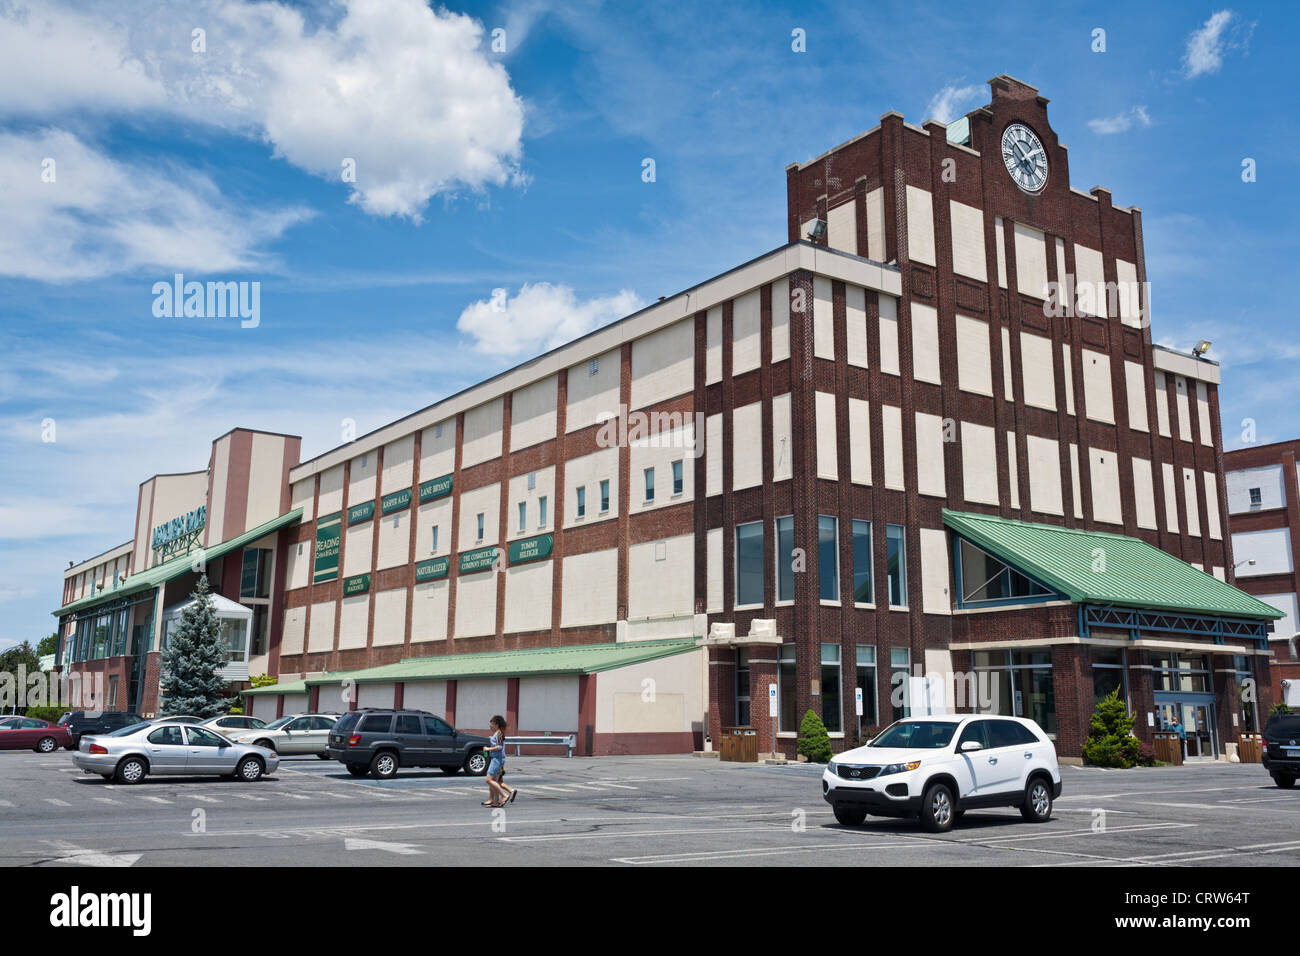 Magasins d'usine de Reading, Pennsylvanie, berceau de magasins d'usine Banque D'Images